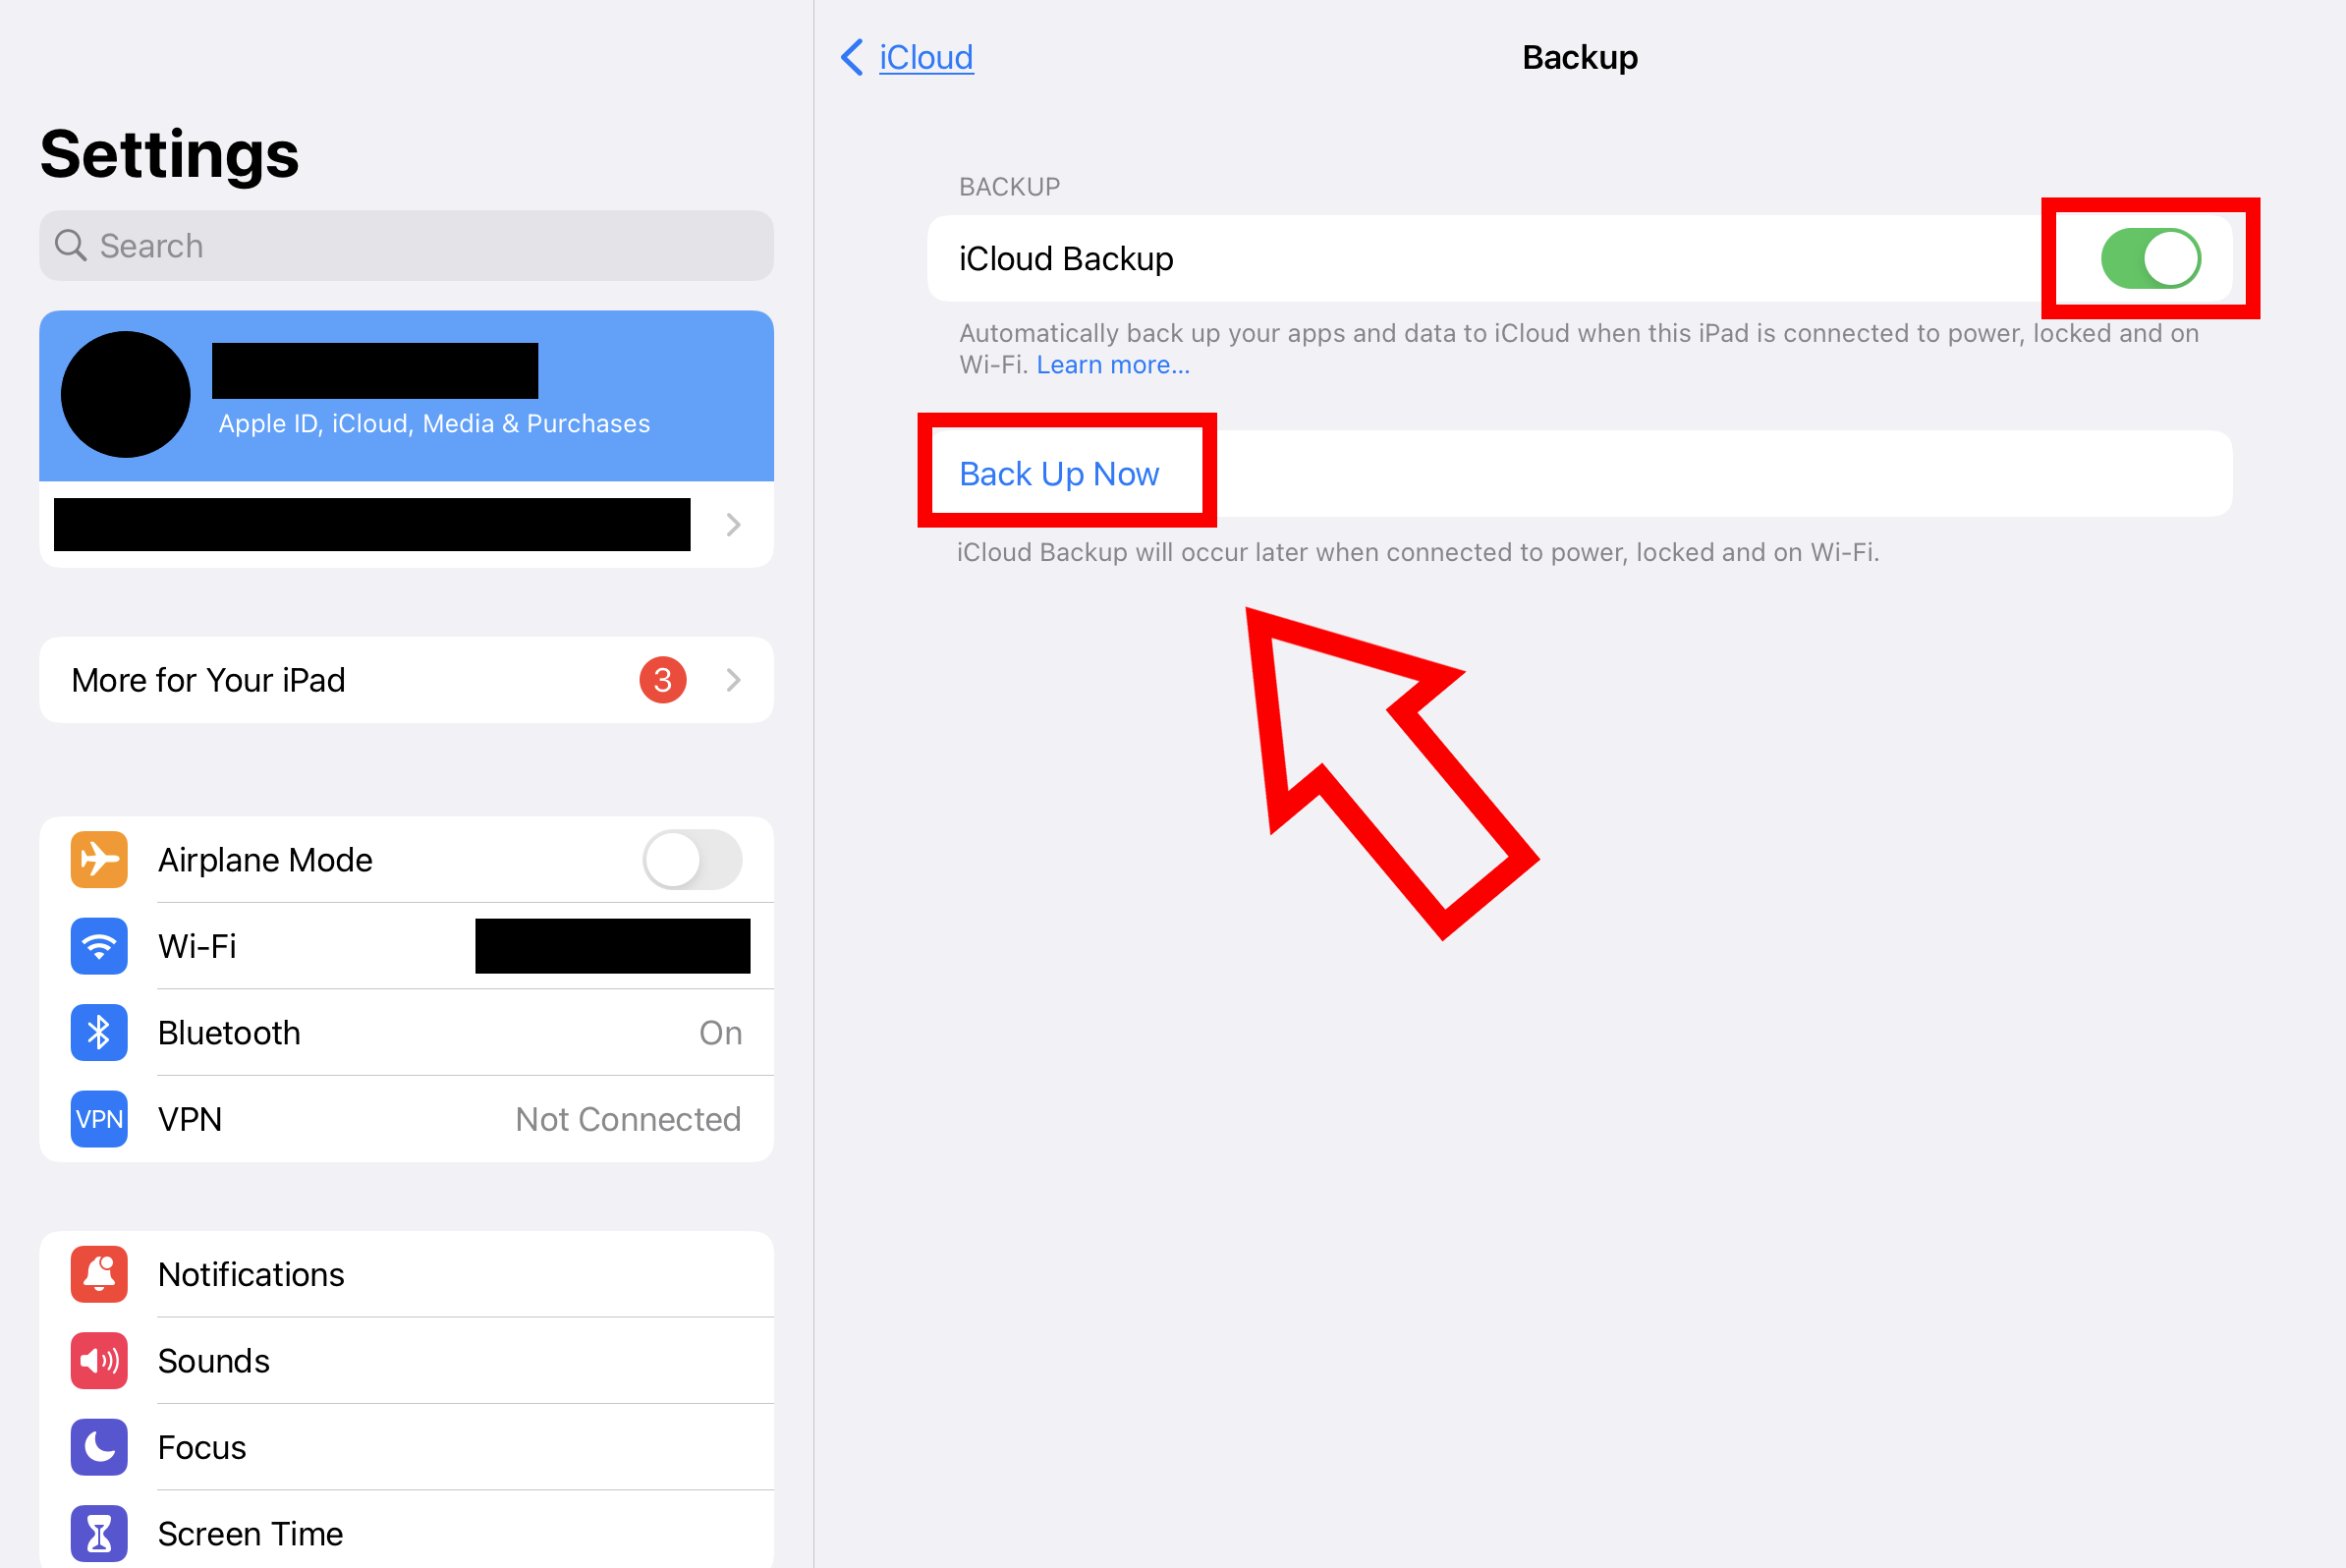 Captura de pantalla de las opciones de copia de seguridad de iCloud en los ajustes del iPad